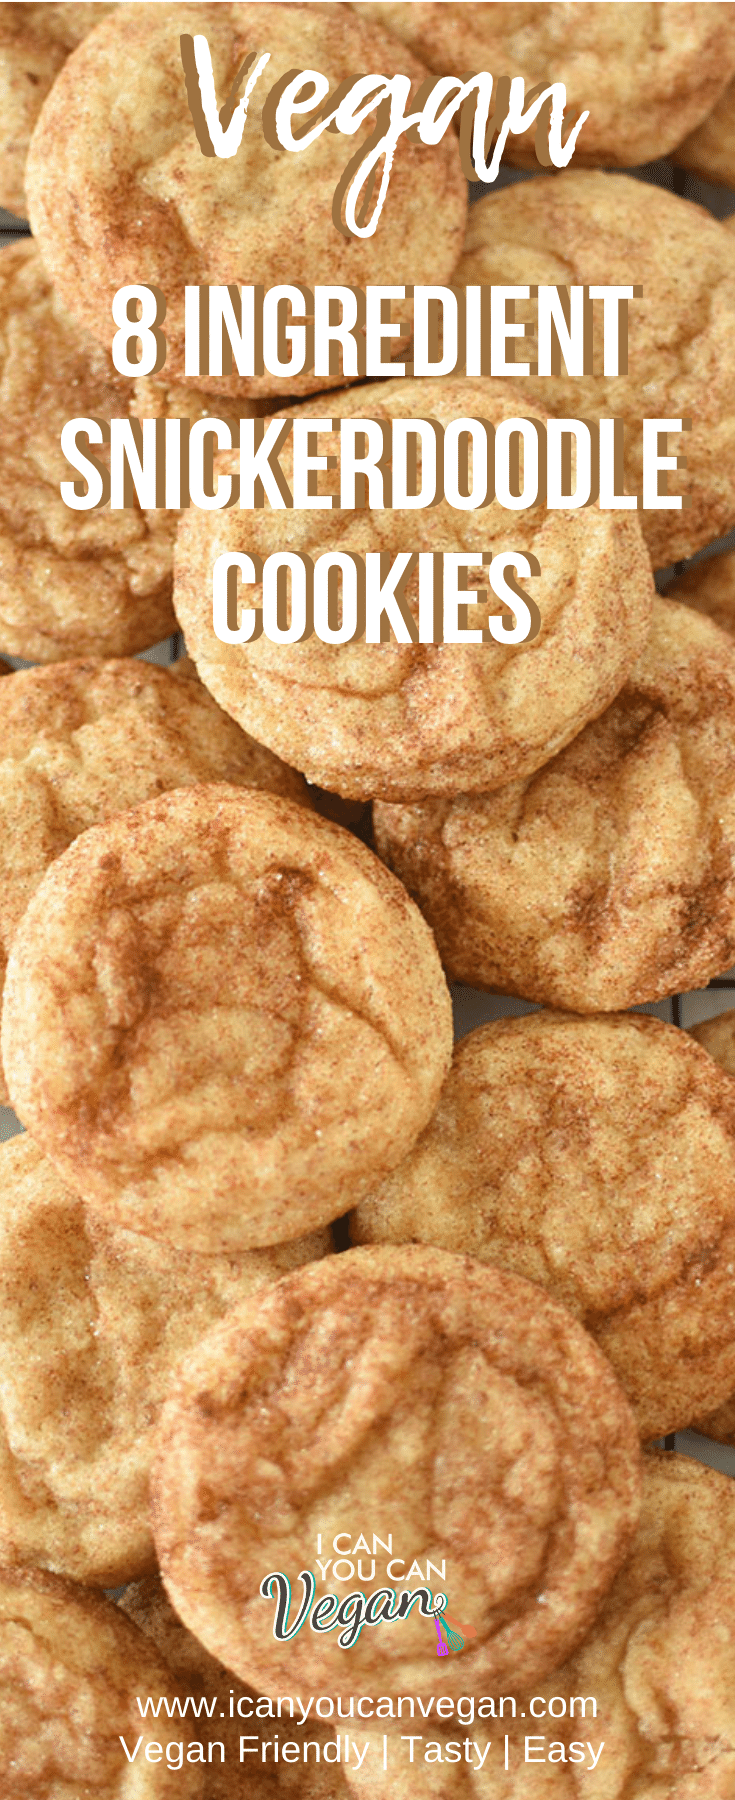 Vegan Snickerdoodle Cookies Pinterest